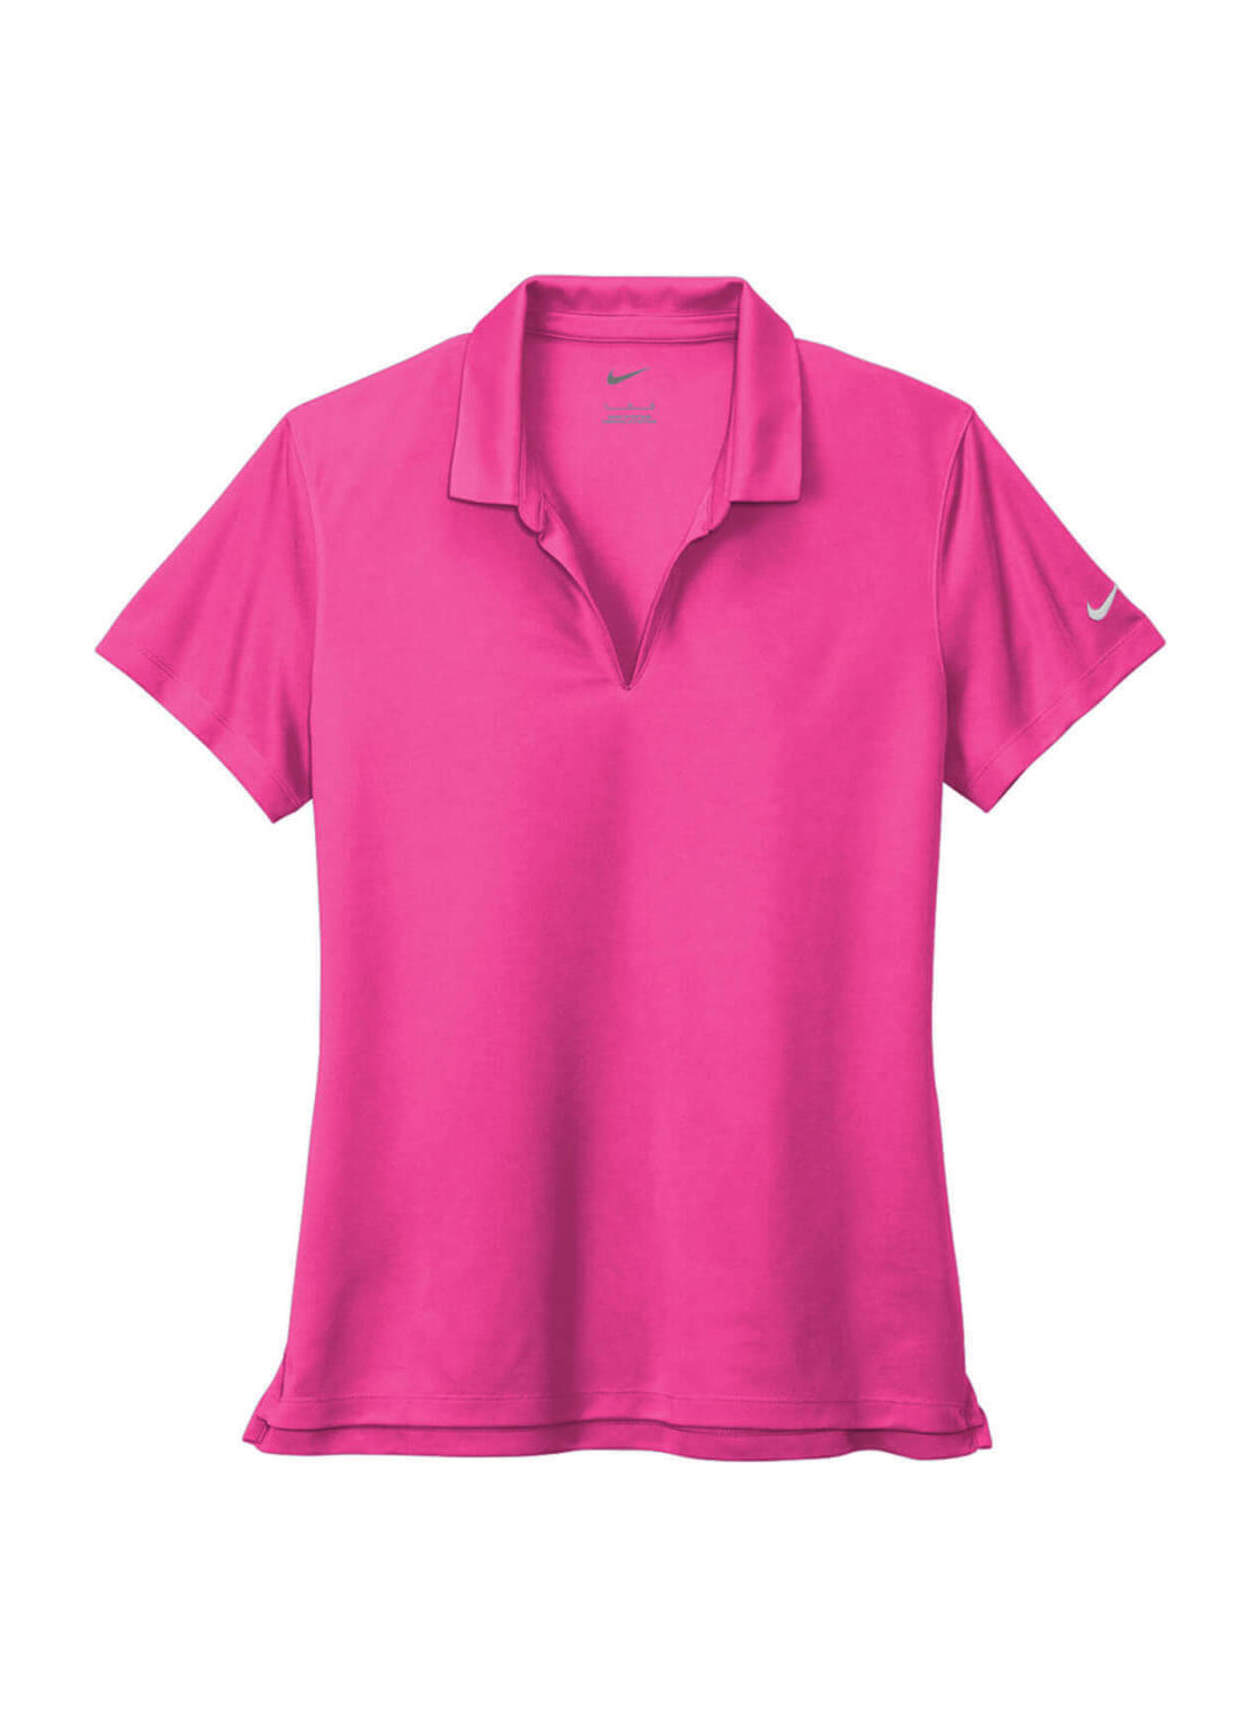 Women's Vivid Pink Nike Dri-FIT Micro Pique 2.0 Polo